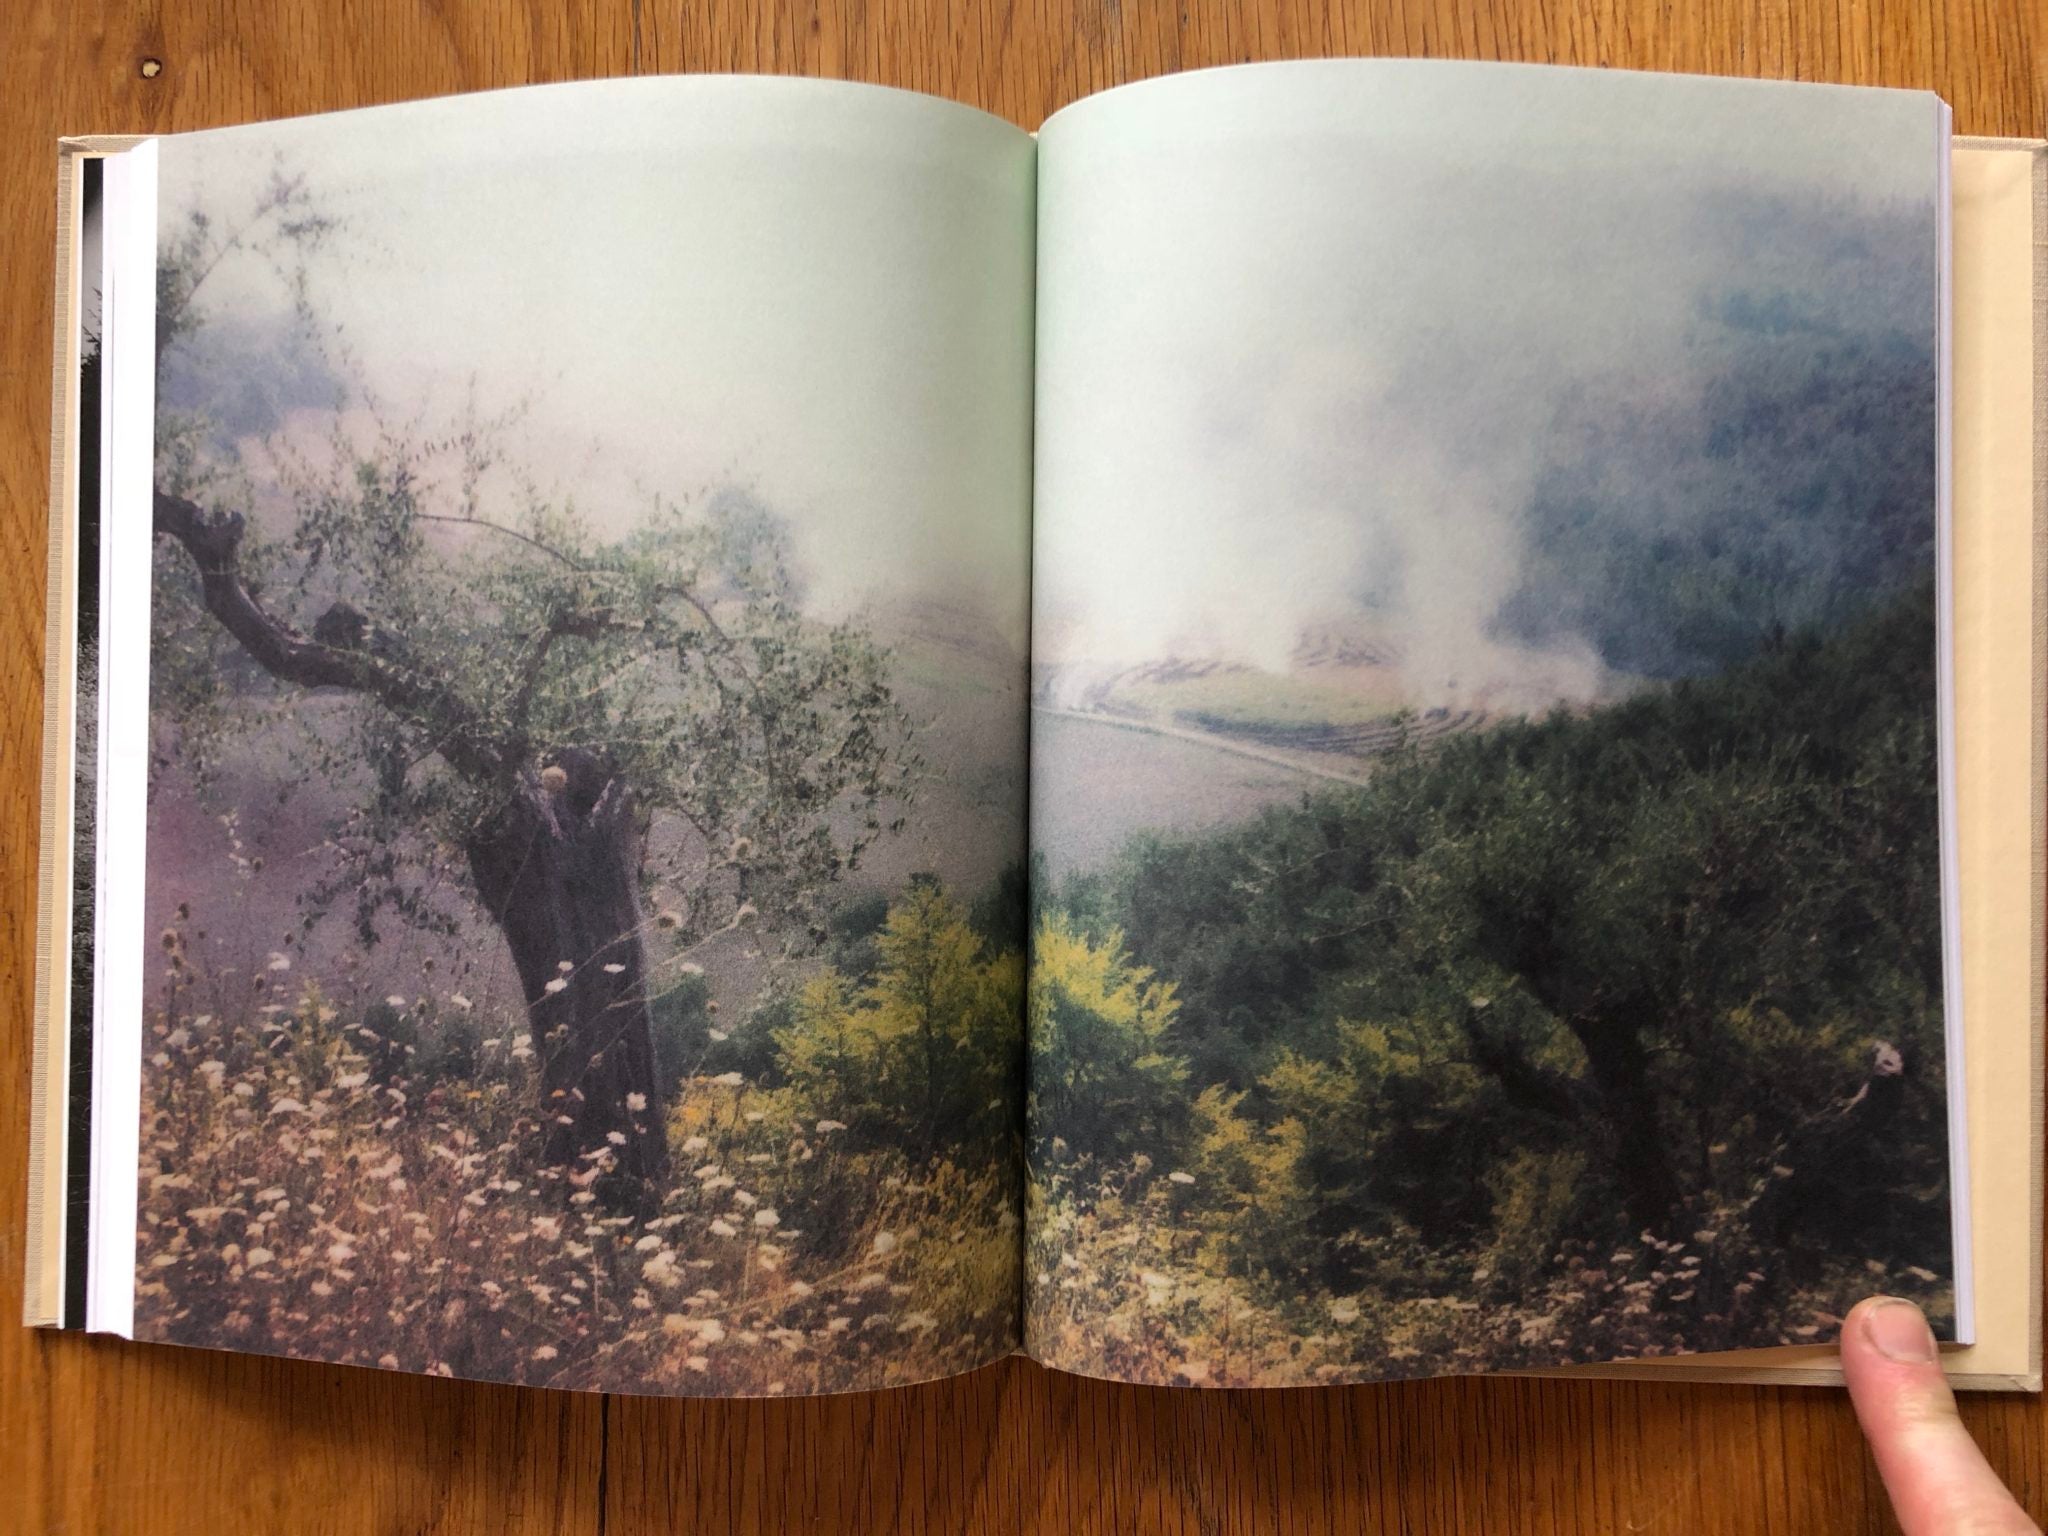 Bright, Bright day by Andrey Tarkovsky | Photography | Setanta Books